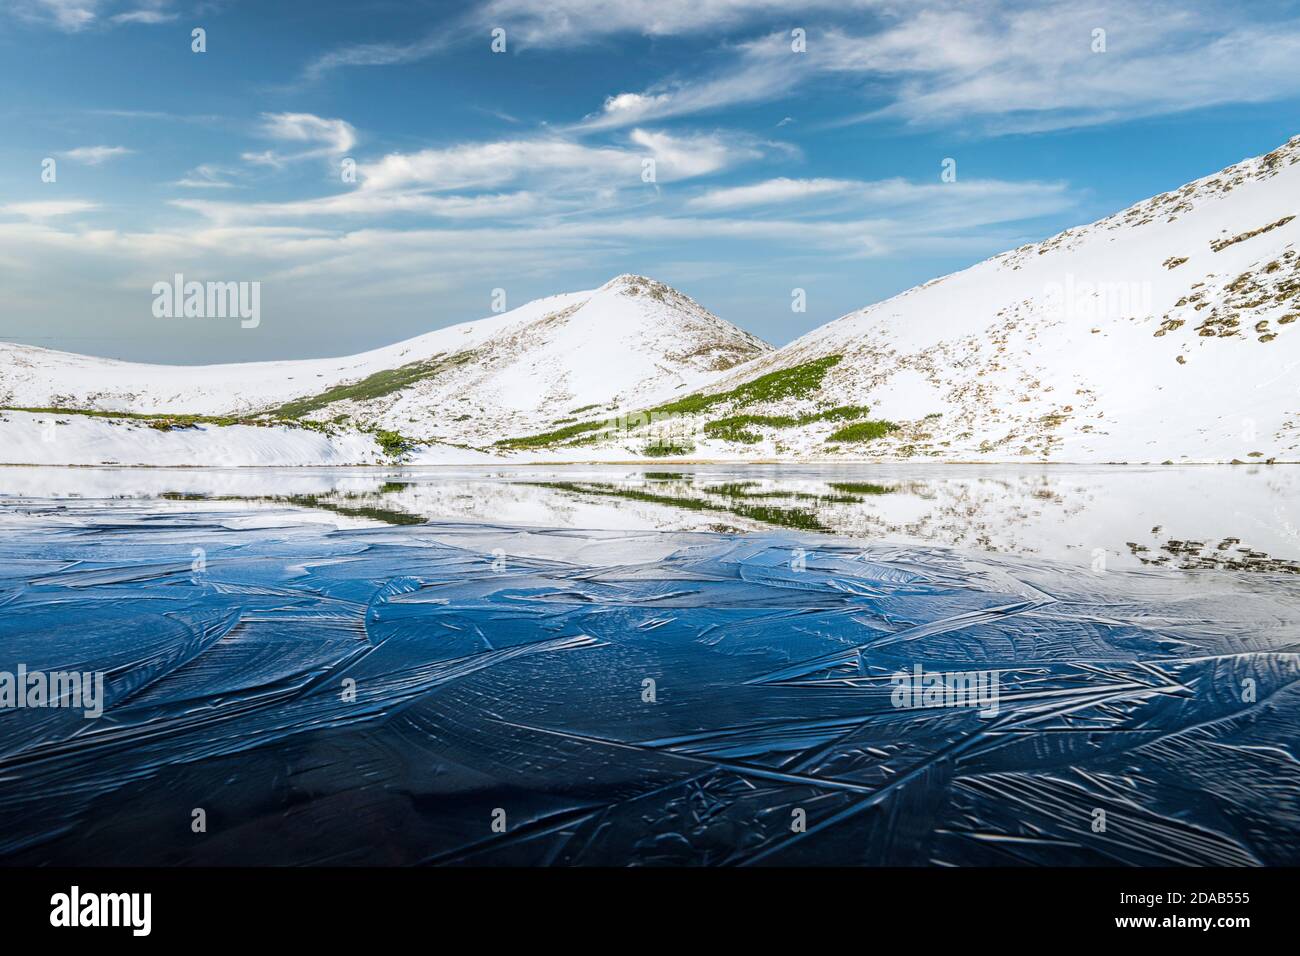 Gefrorener Bergsee mit blauem Eis und Rissen an der Oberfläche. Malerische Winterlandschaft mit verschneiten Hügeln unter blauem Himmel, Karpaten, Europa Stockfoto